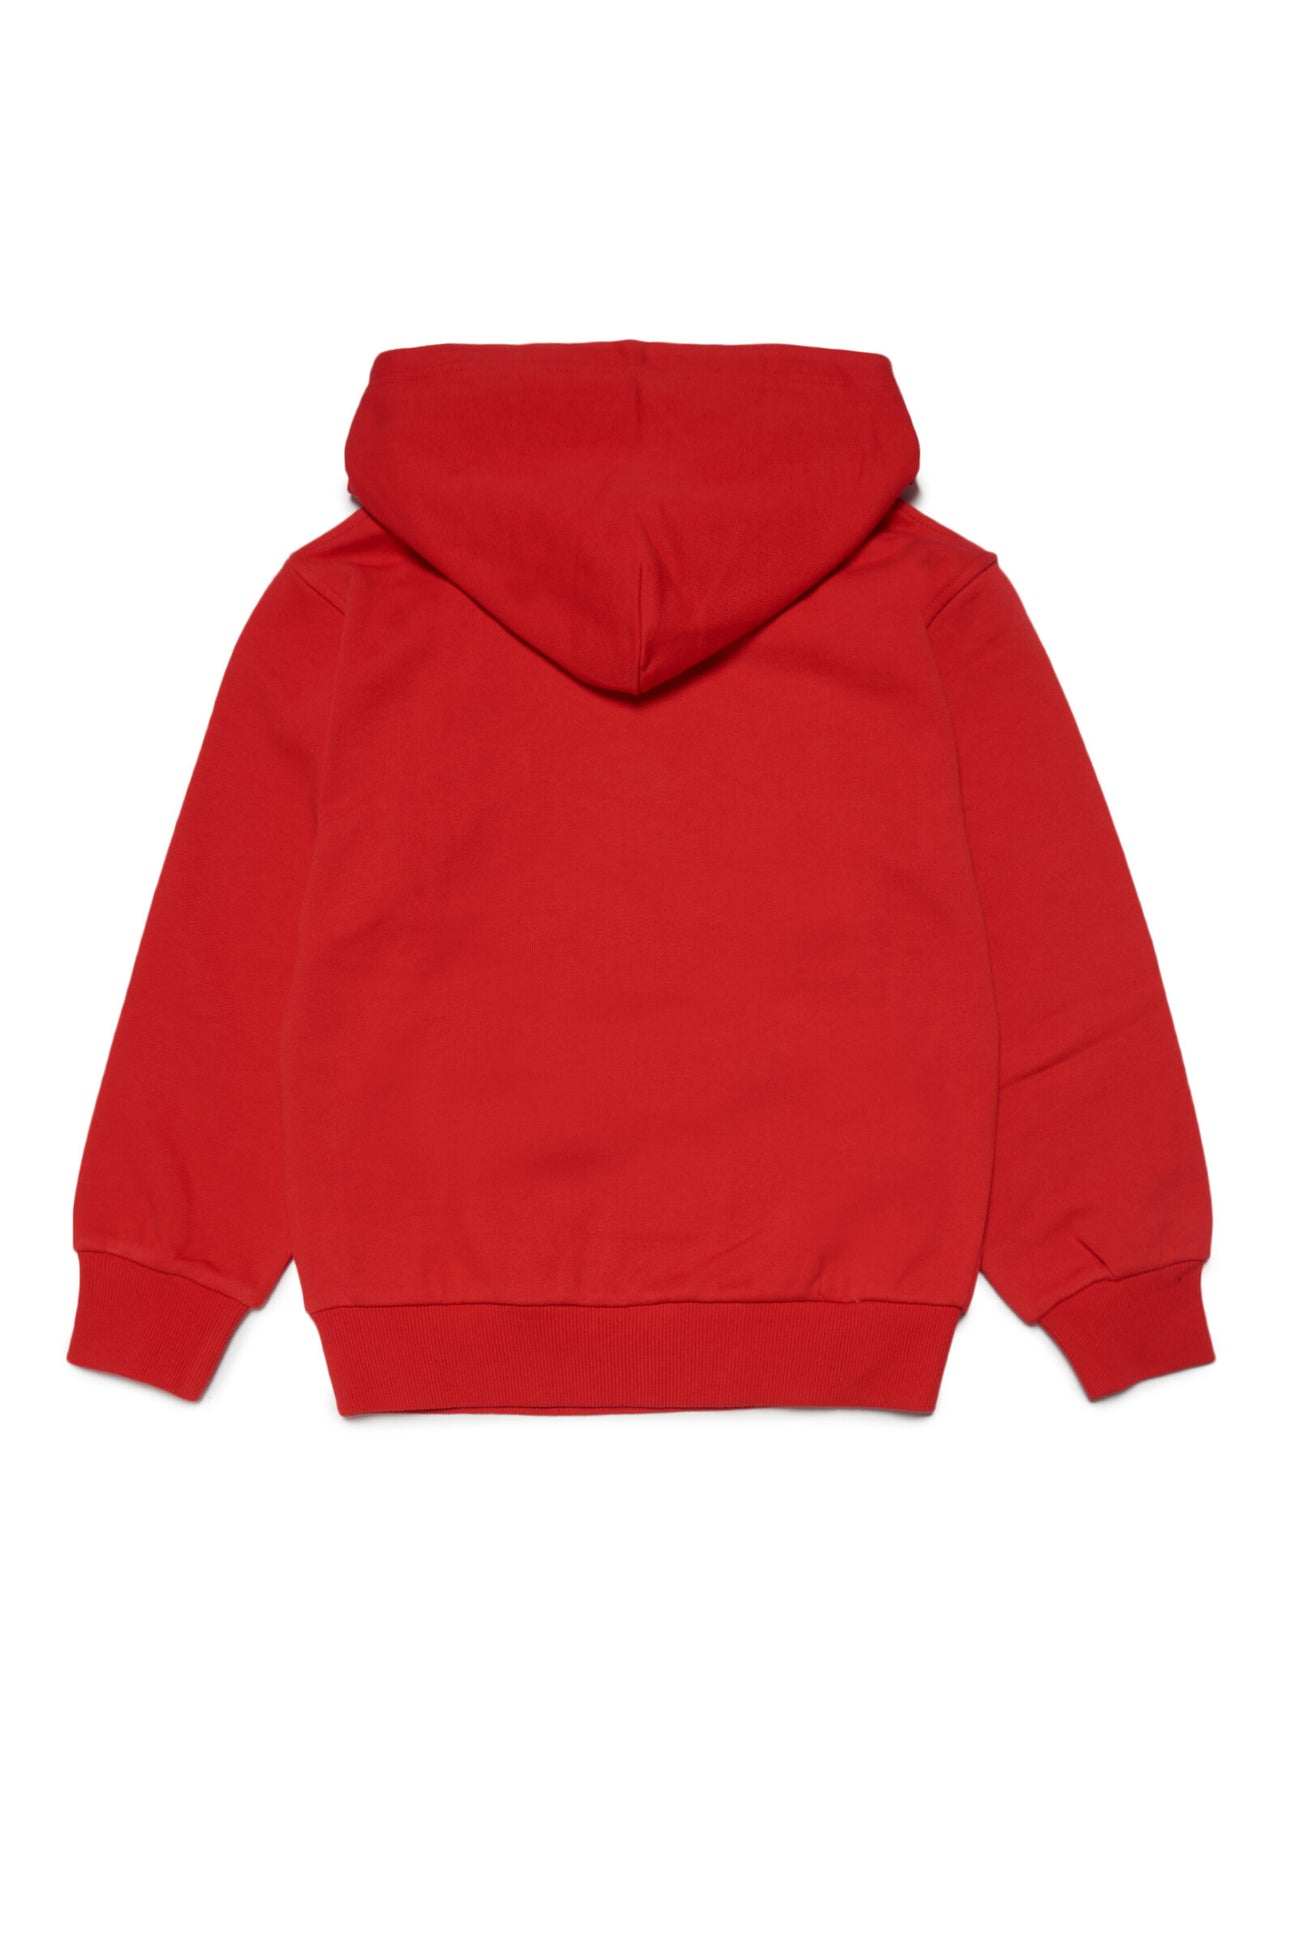 Sudadera roja con capucha y logotipo con efecto acuarela Sudadera roja con capucha y logotipo con efecto acuarela